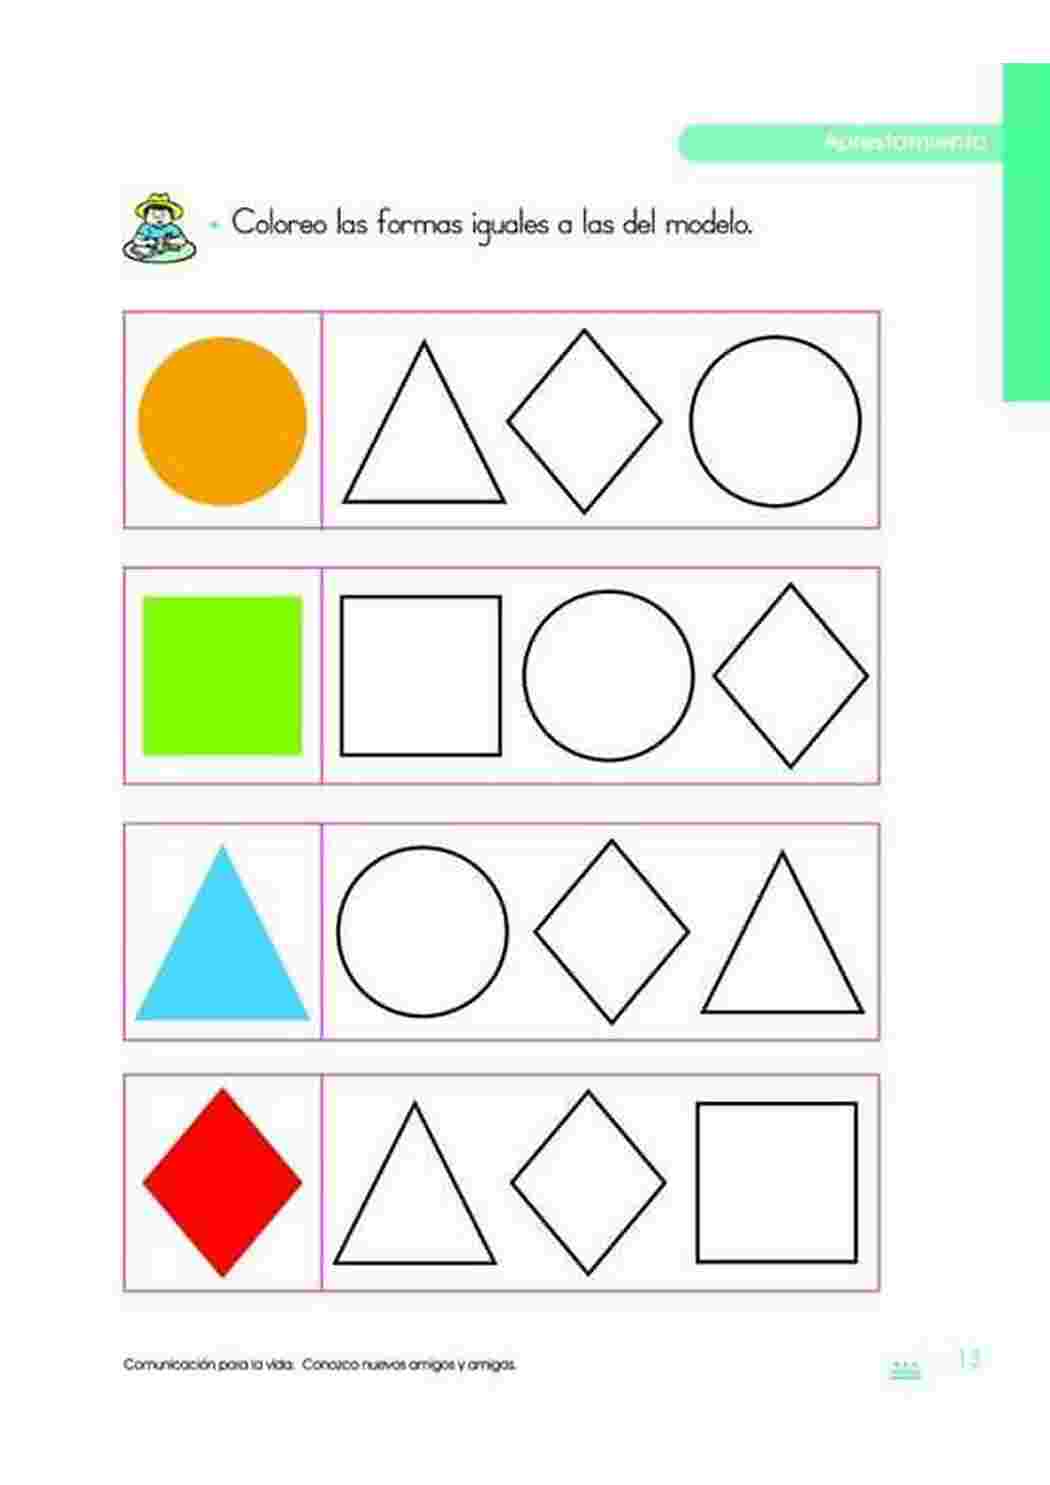 Раскраски Задания где нужно продолжить цветовой ряд по образцу Задания на внимательность с цветами и геометрическими фигурами